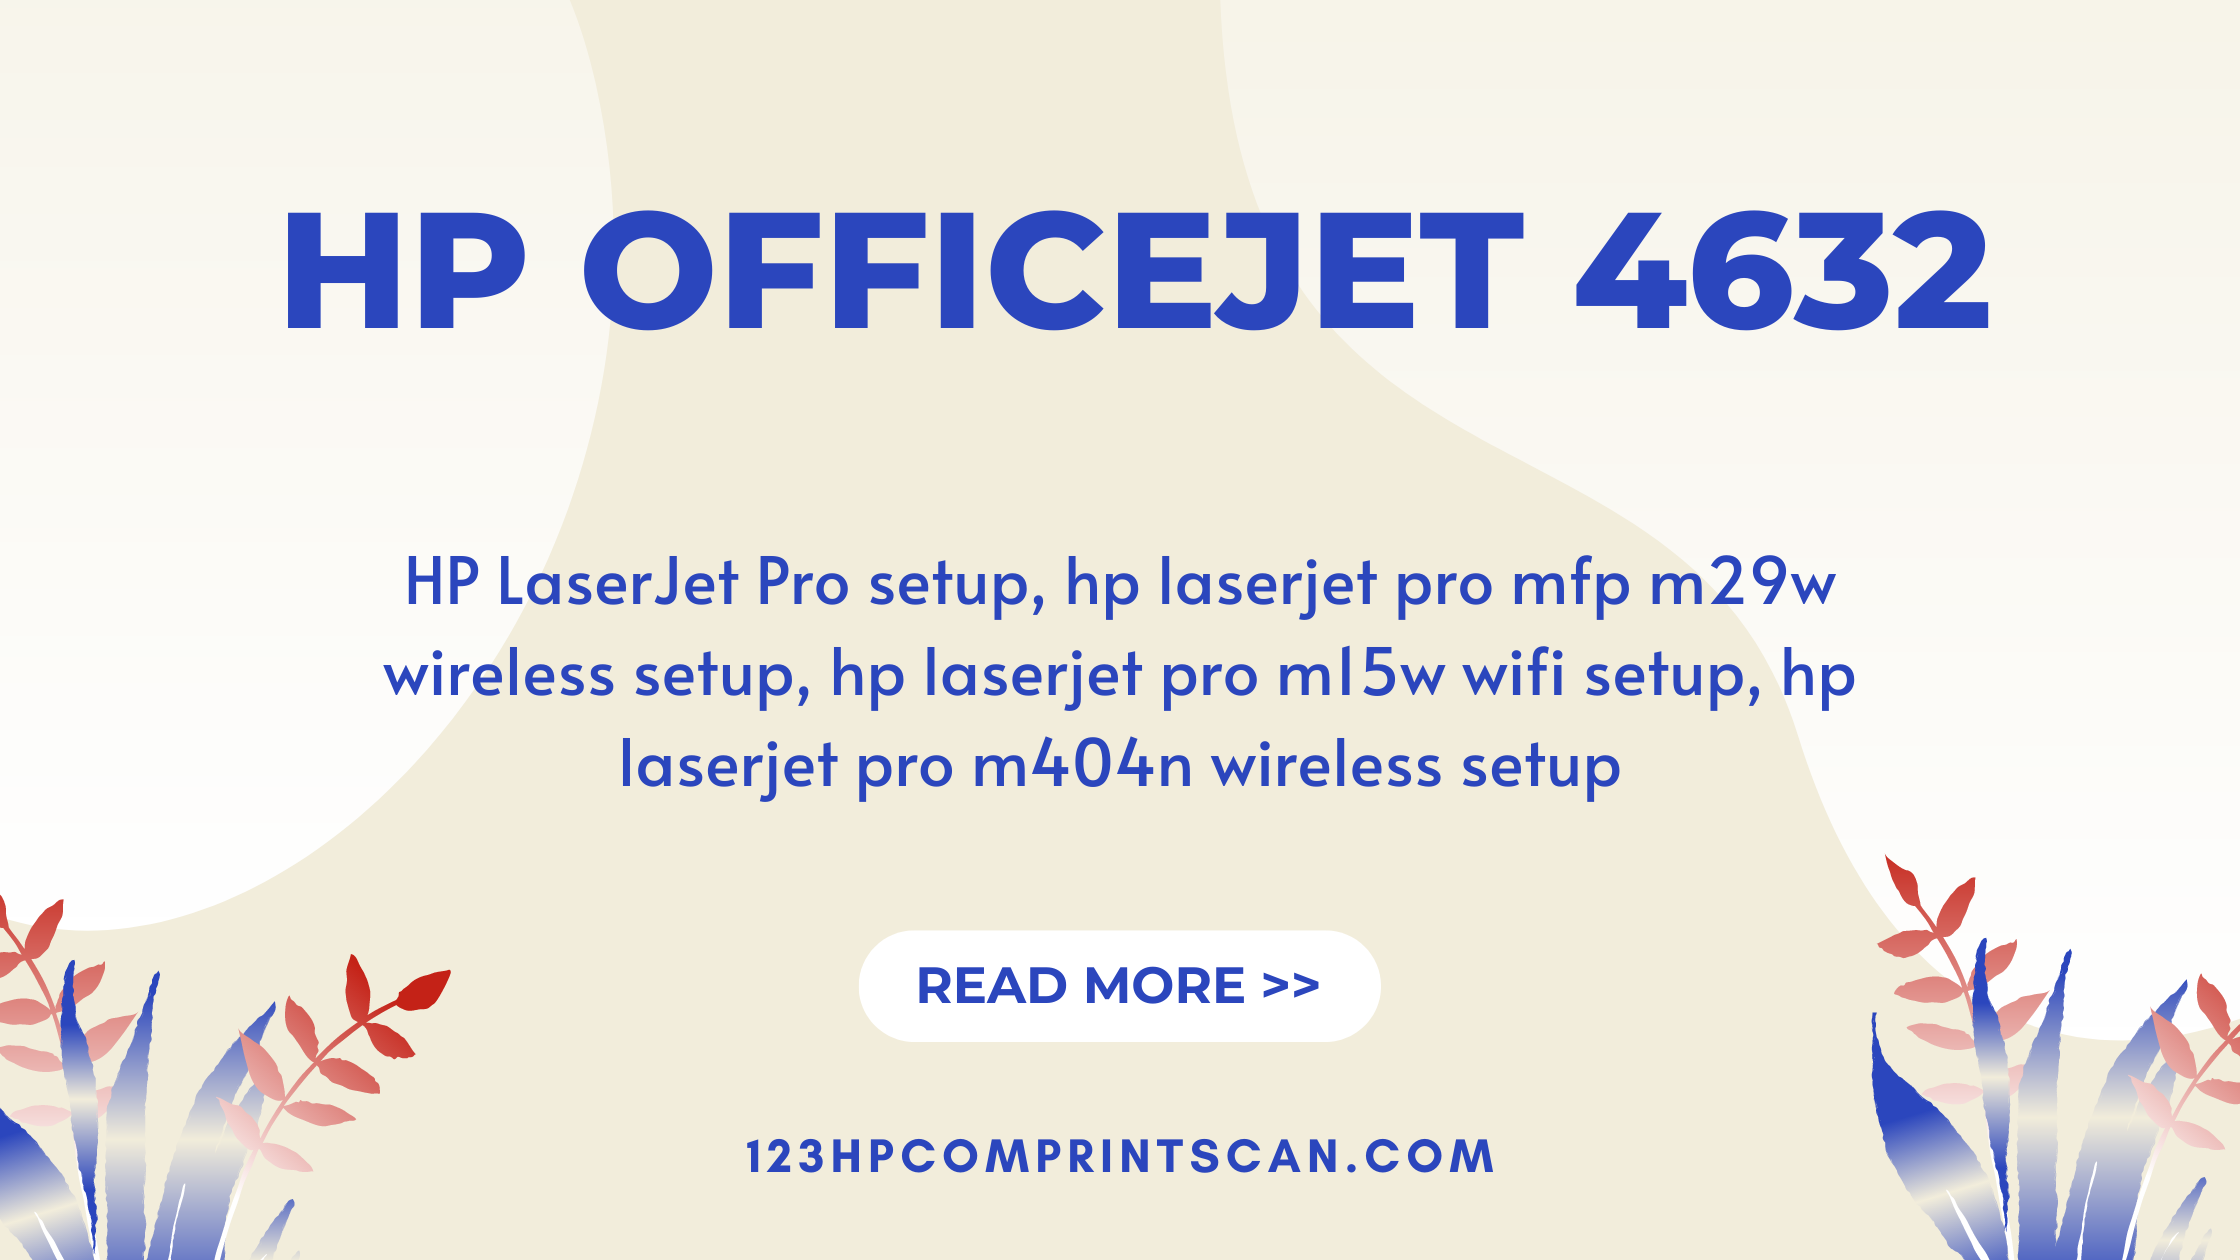 HP Officejet 4632 (2)-fcee3bdd